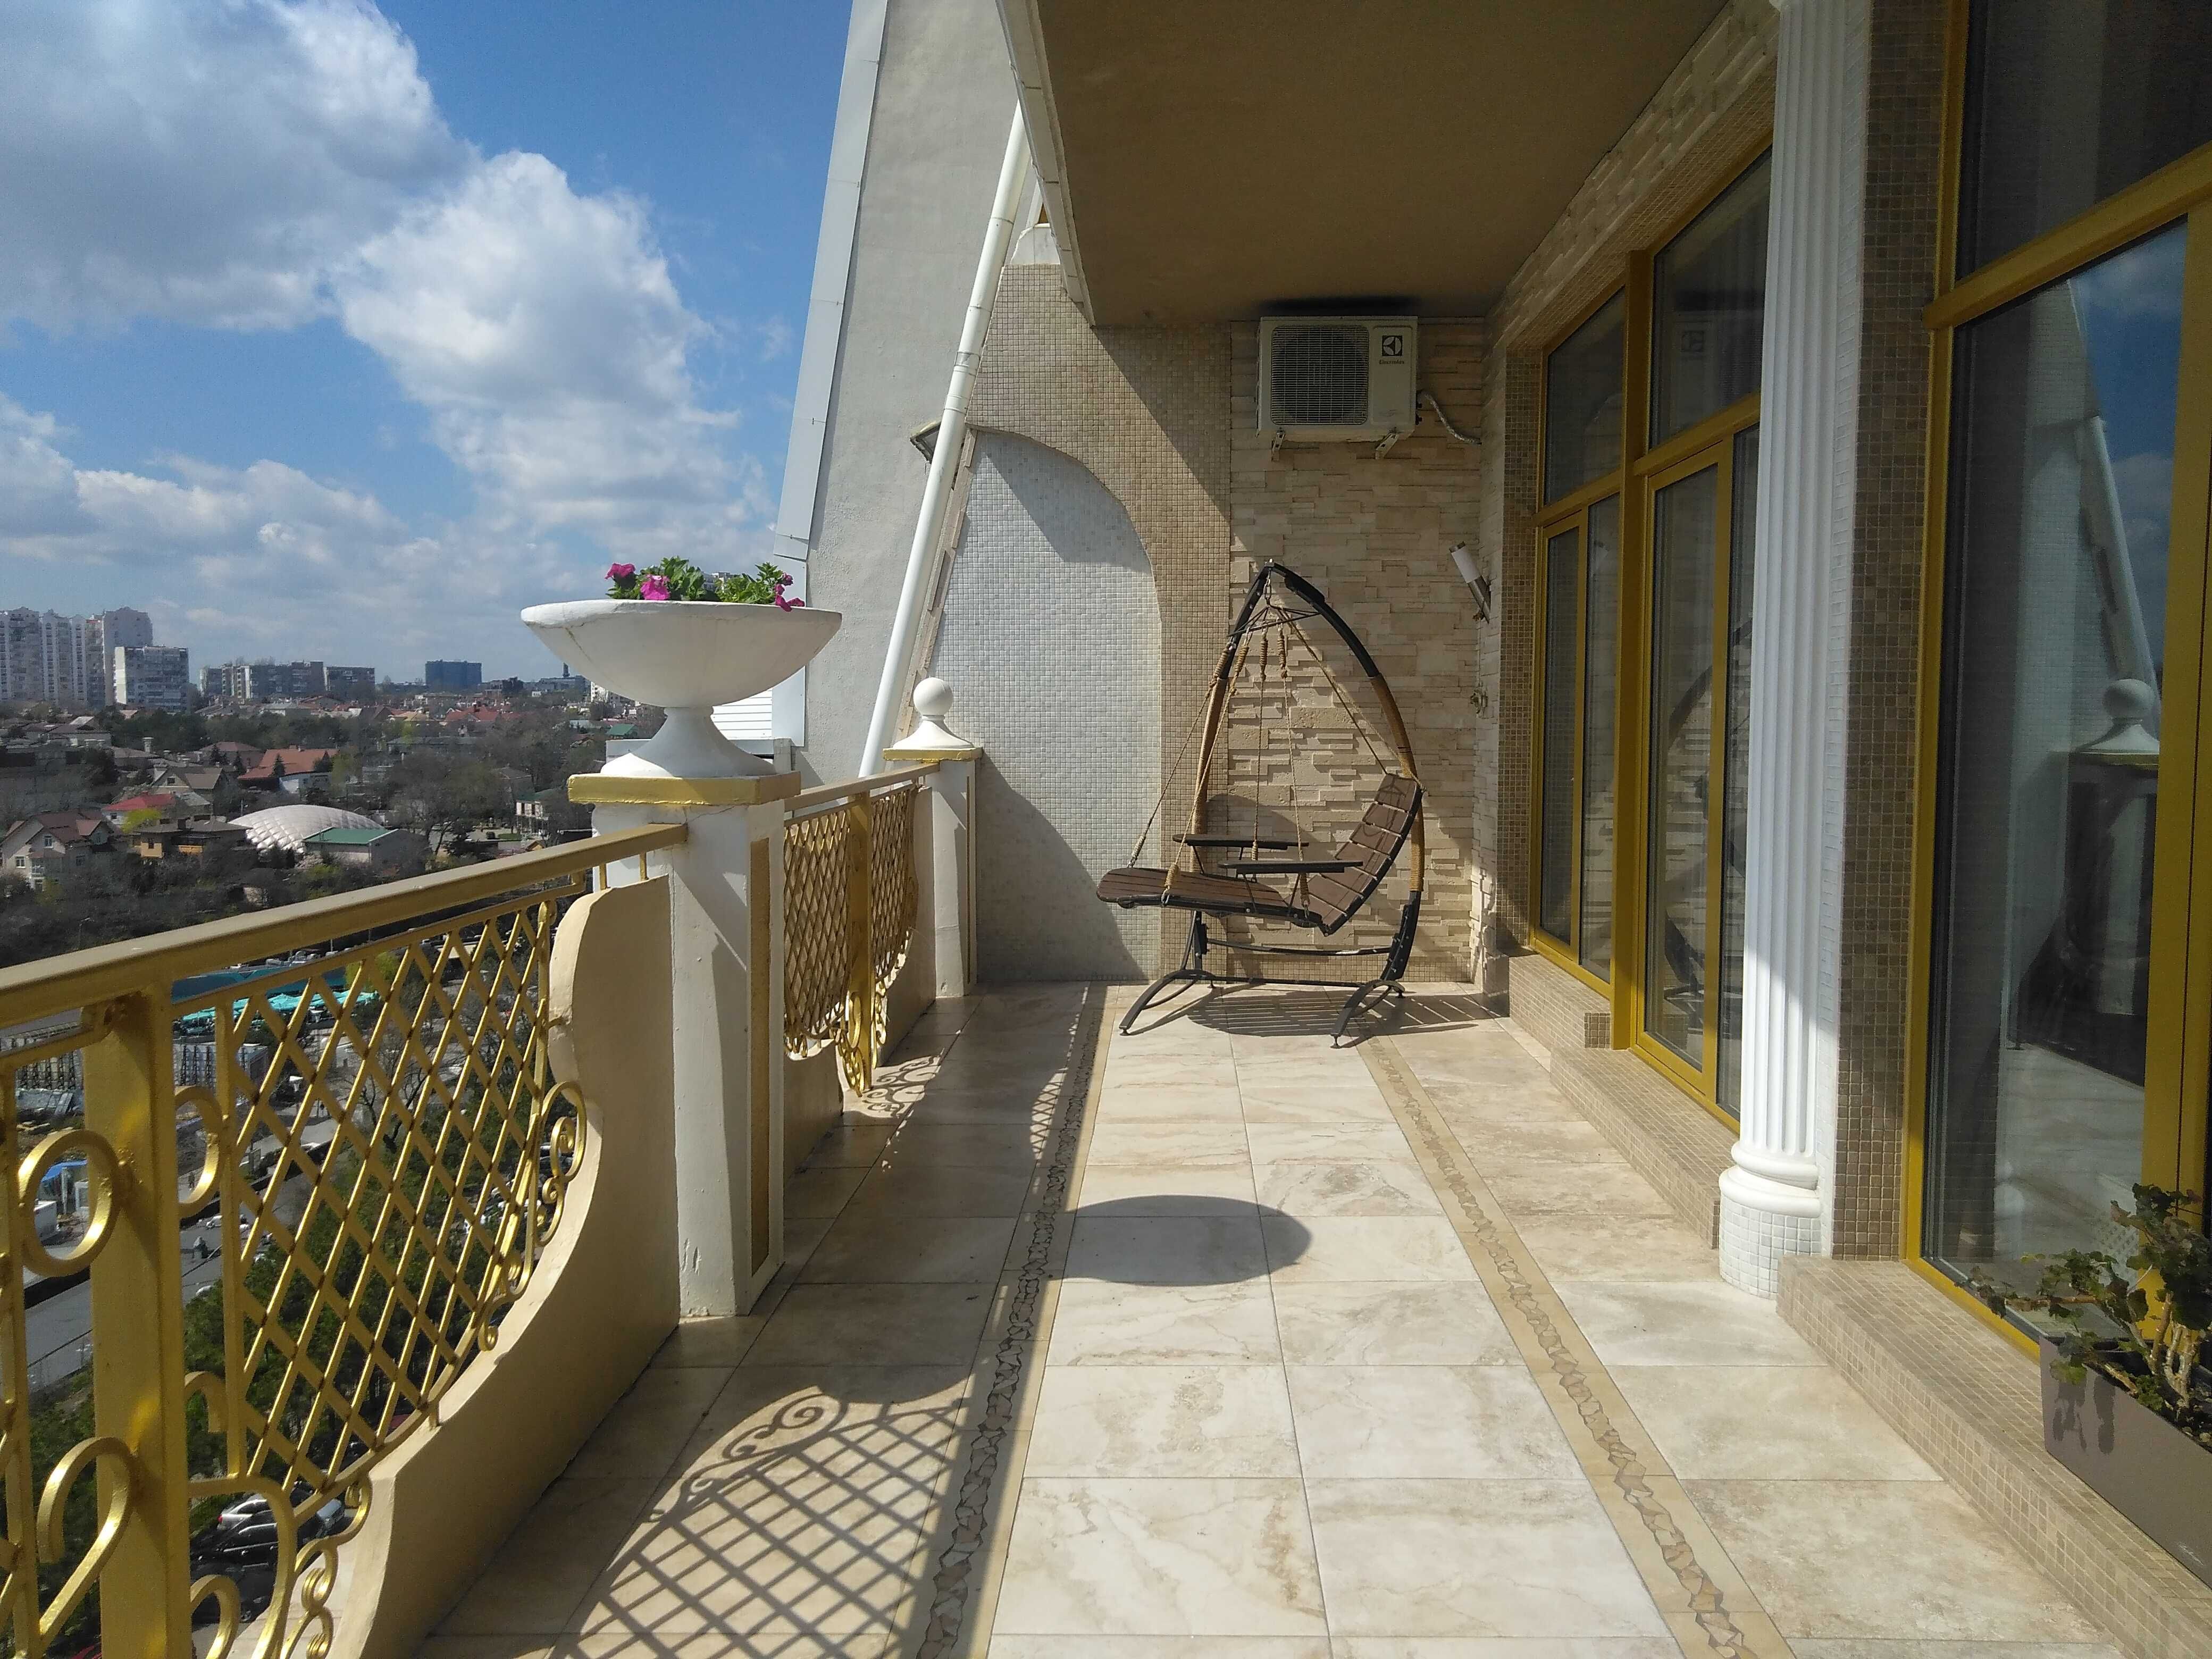 ЖК"Аркадийский дворец"- видовая квартира  с террасой, панорамой моря